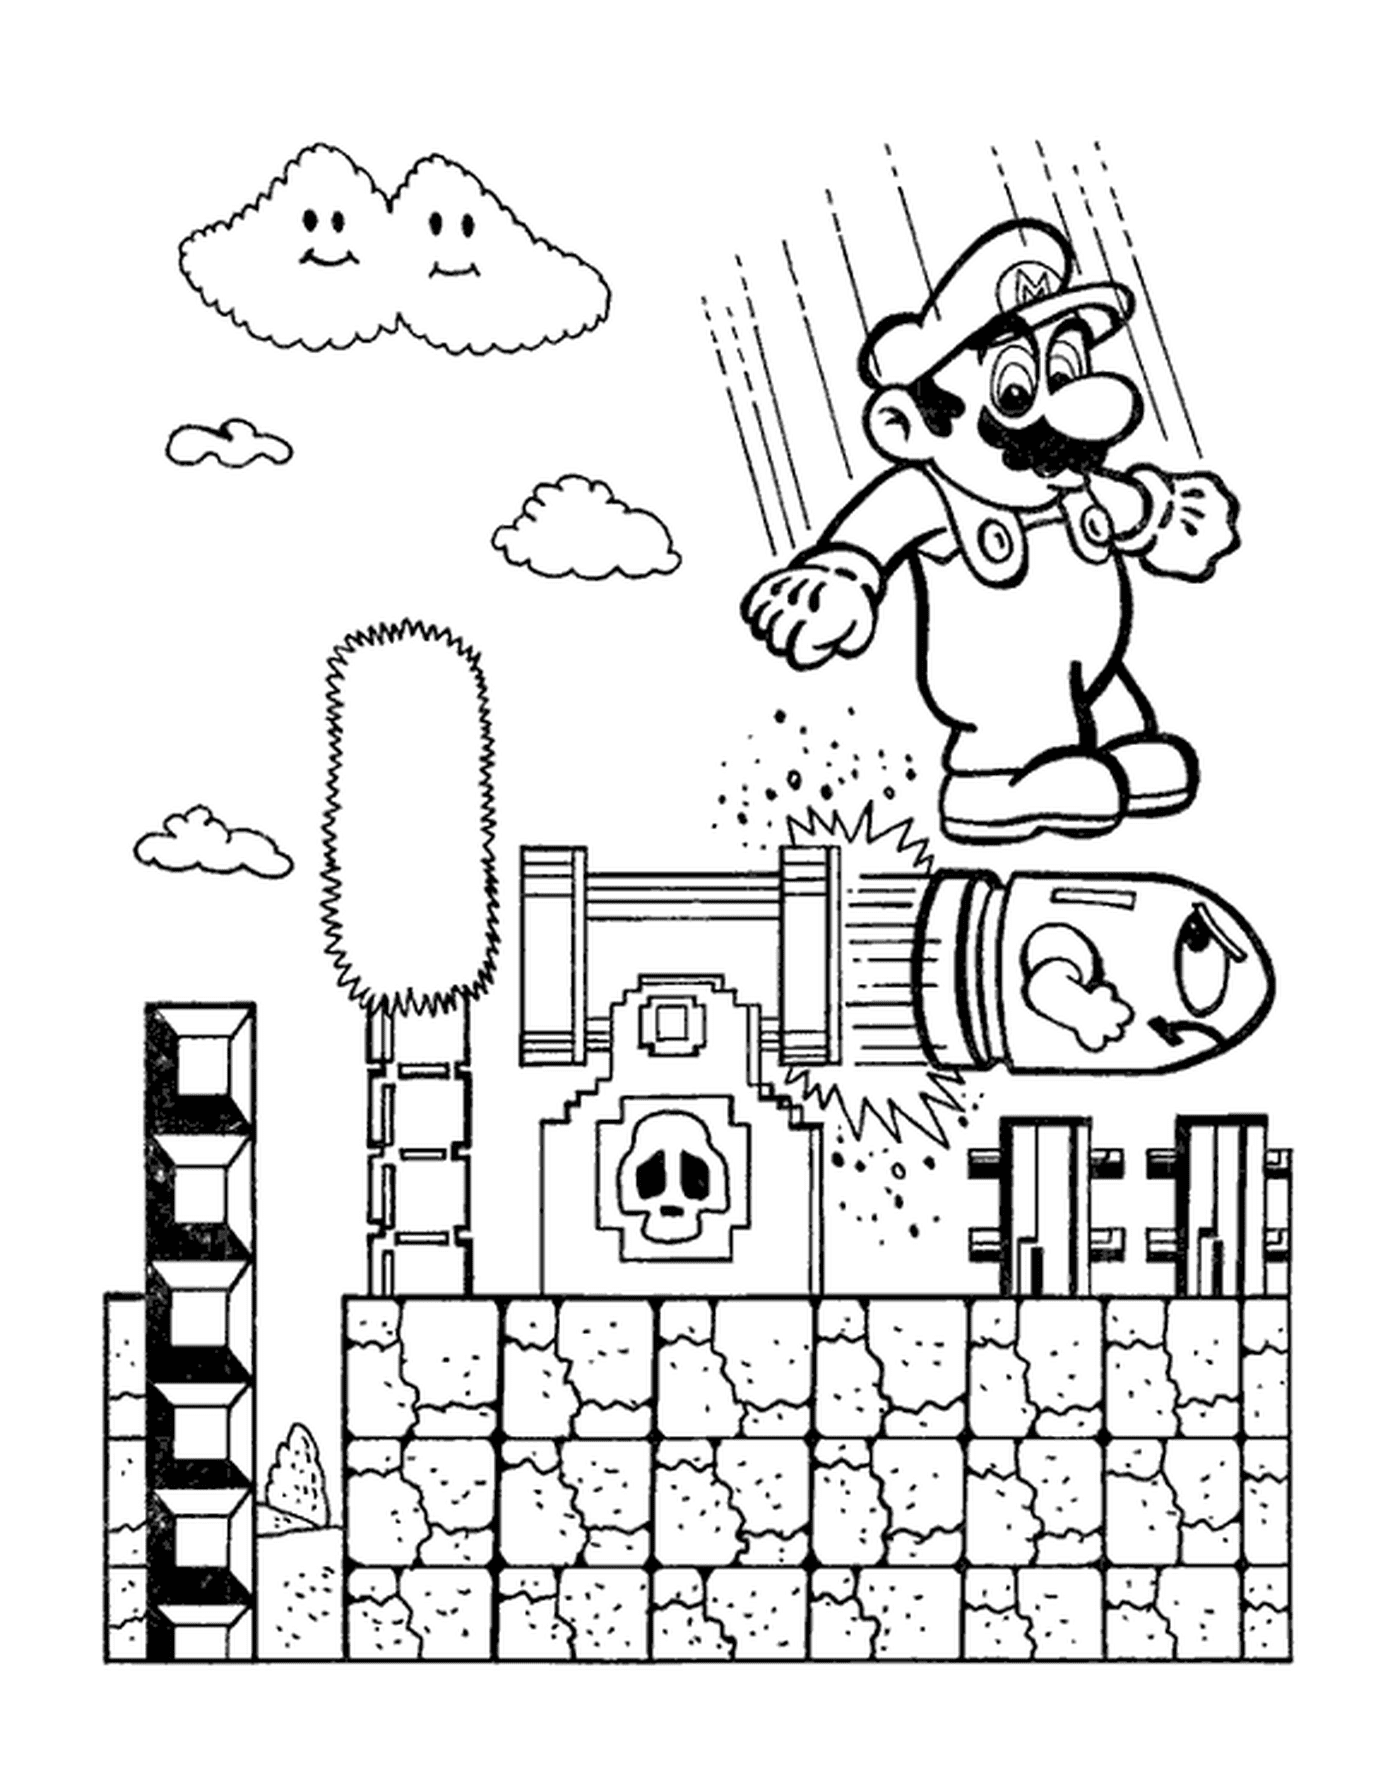   Mario saute sur une bombe dangereuse 